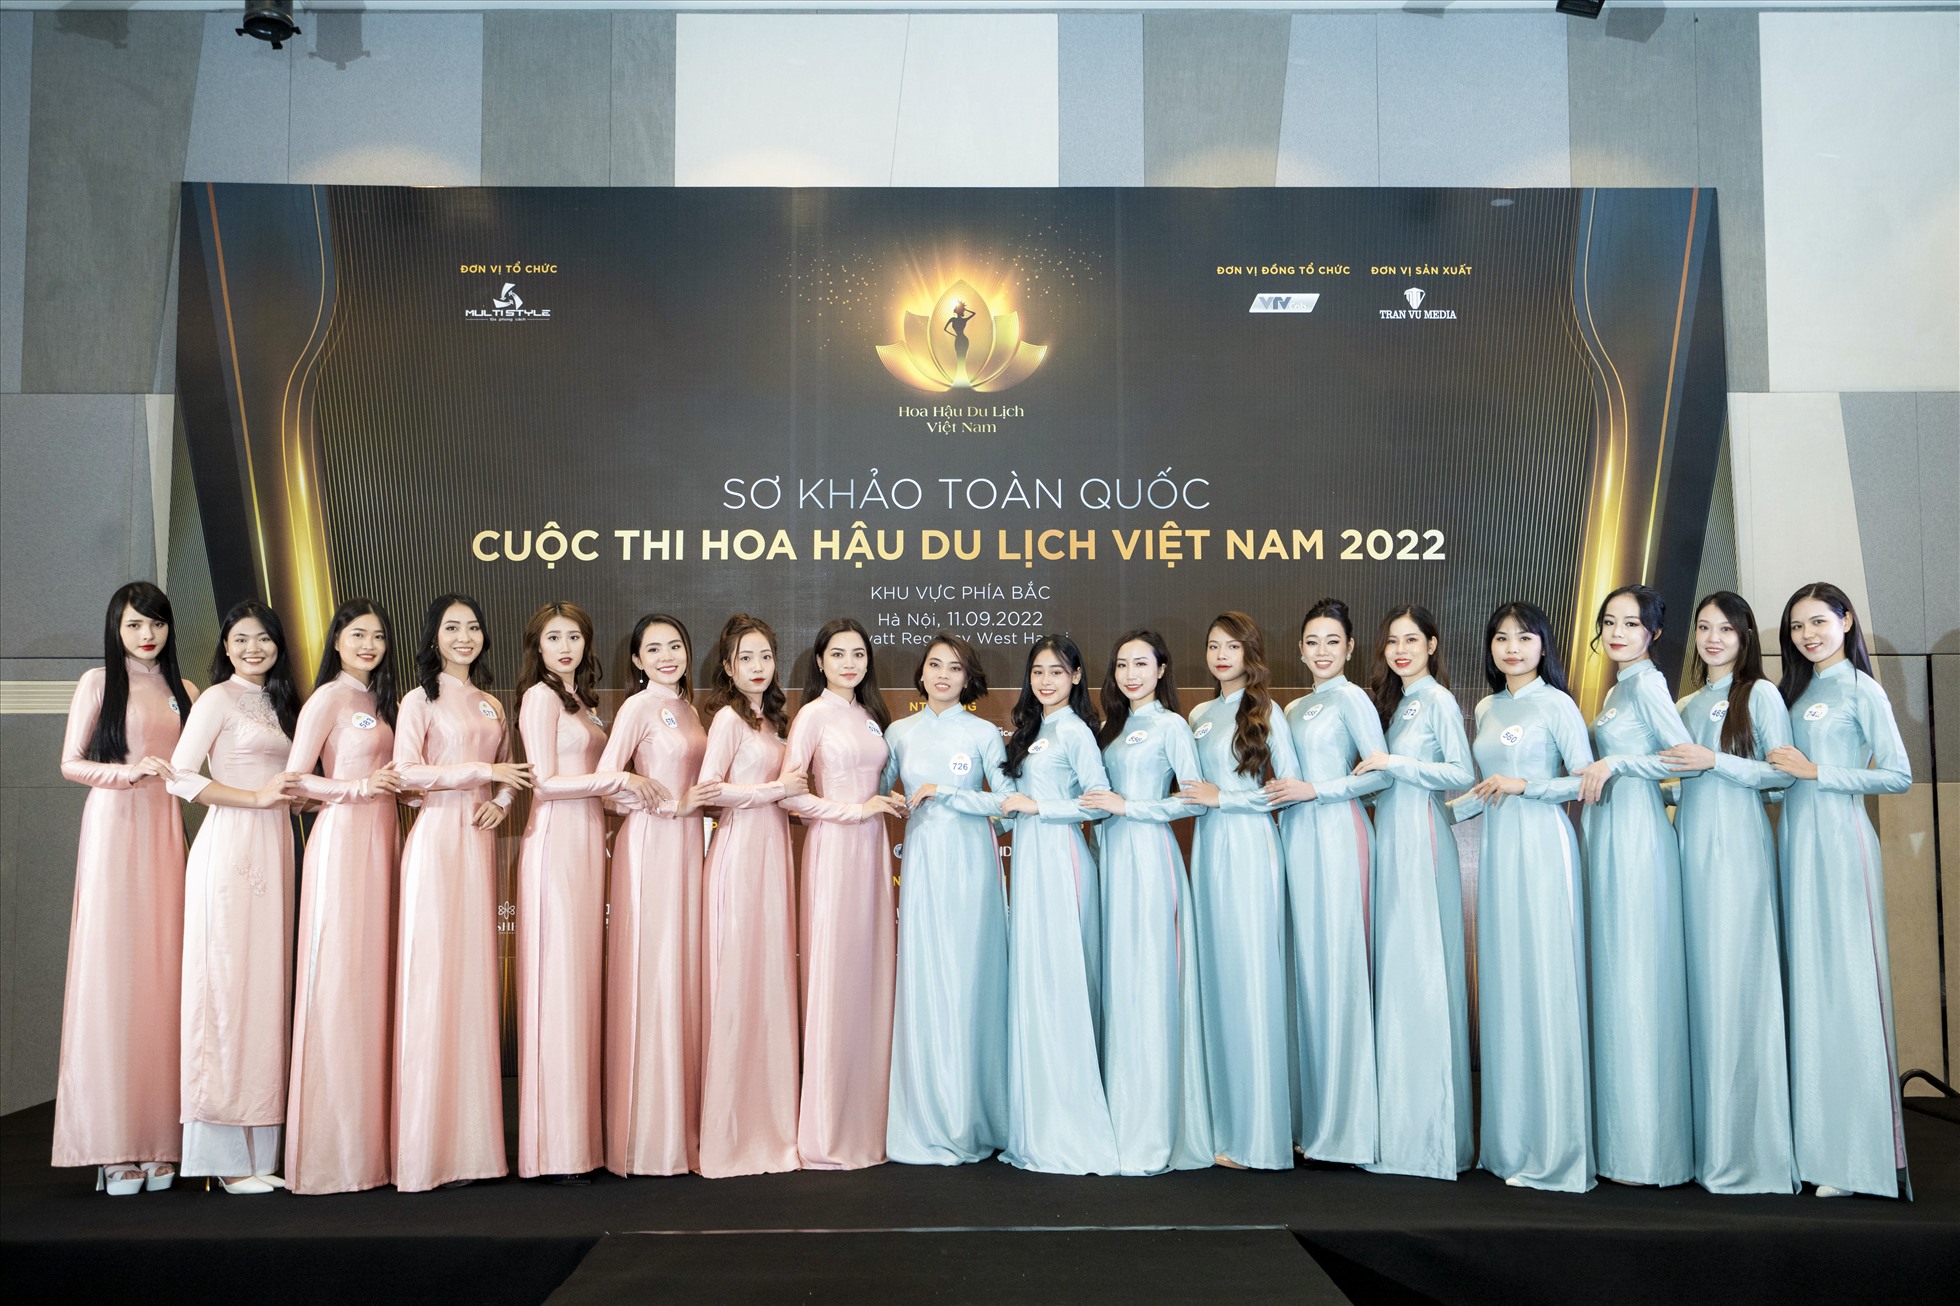 Sơ khảo Hoa hậu Du lịch Việt Nam 2022 diễn ra tại Hà Nội.